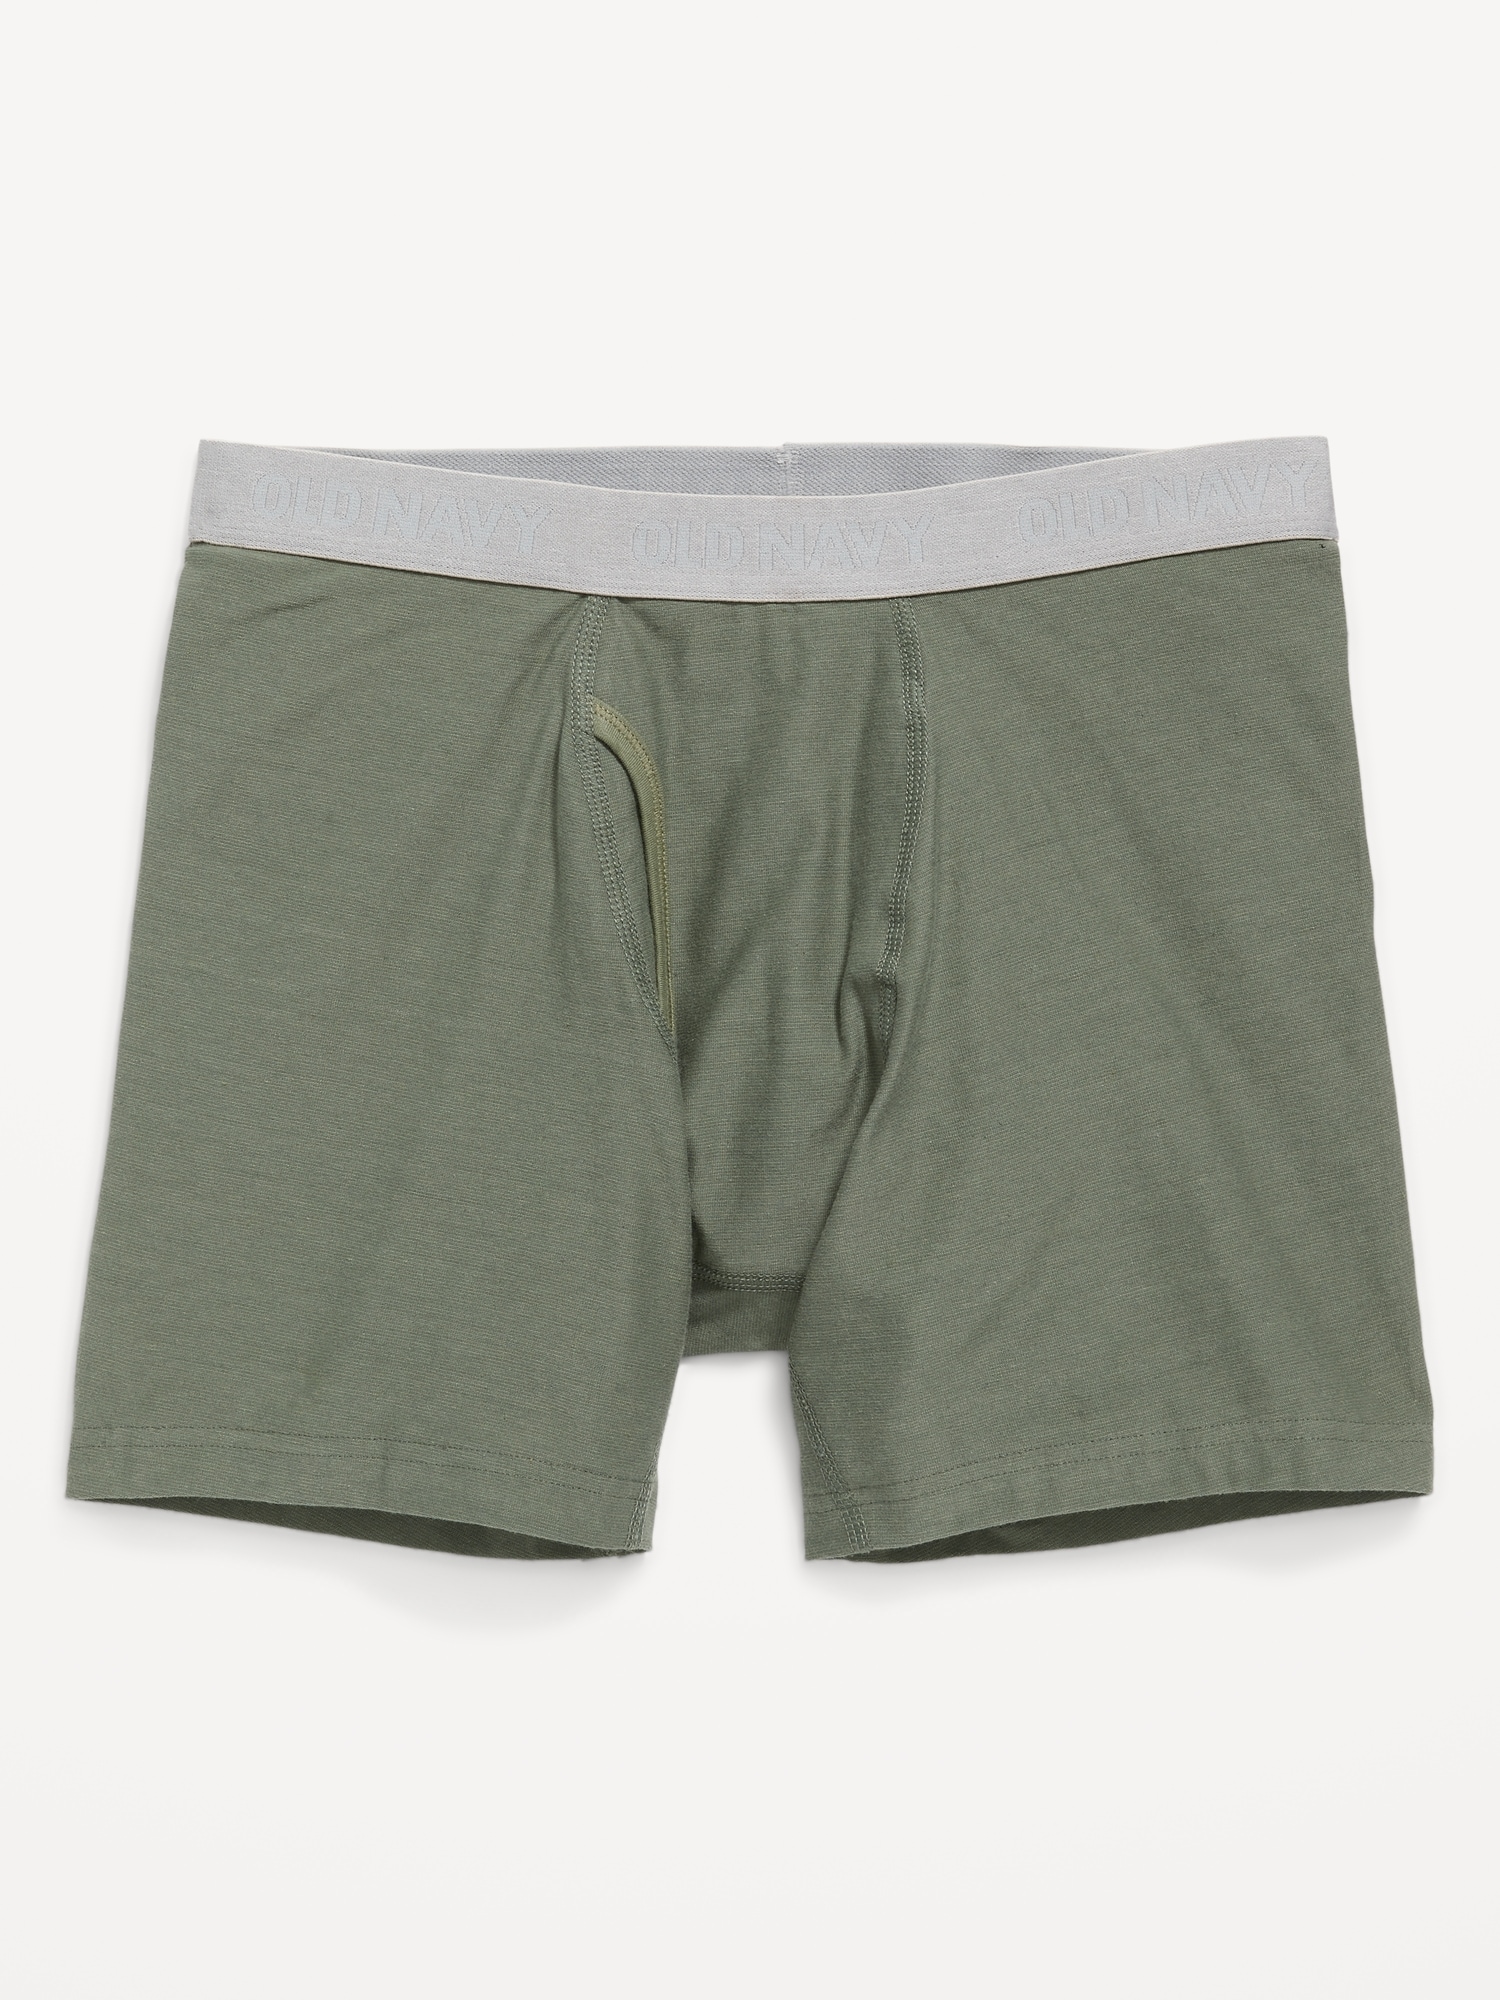 Old Navy Soft-Washed Built-In Flex Boxer-Brief Underwear for Men -- 6.25-inch inseam green. 1